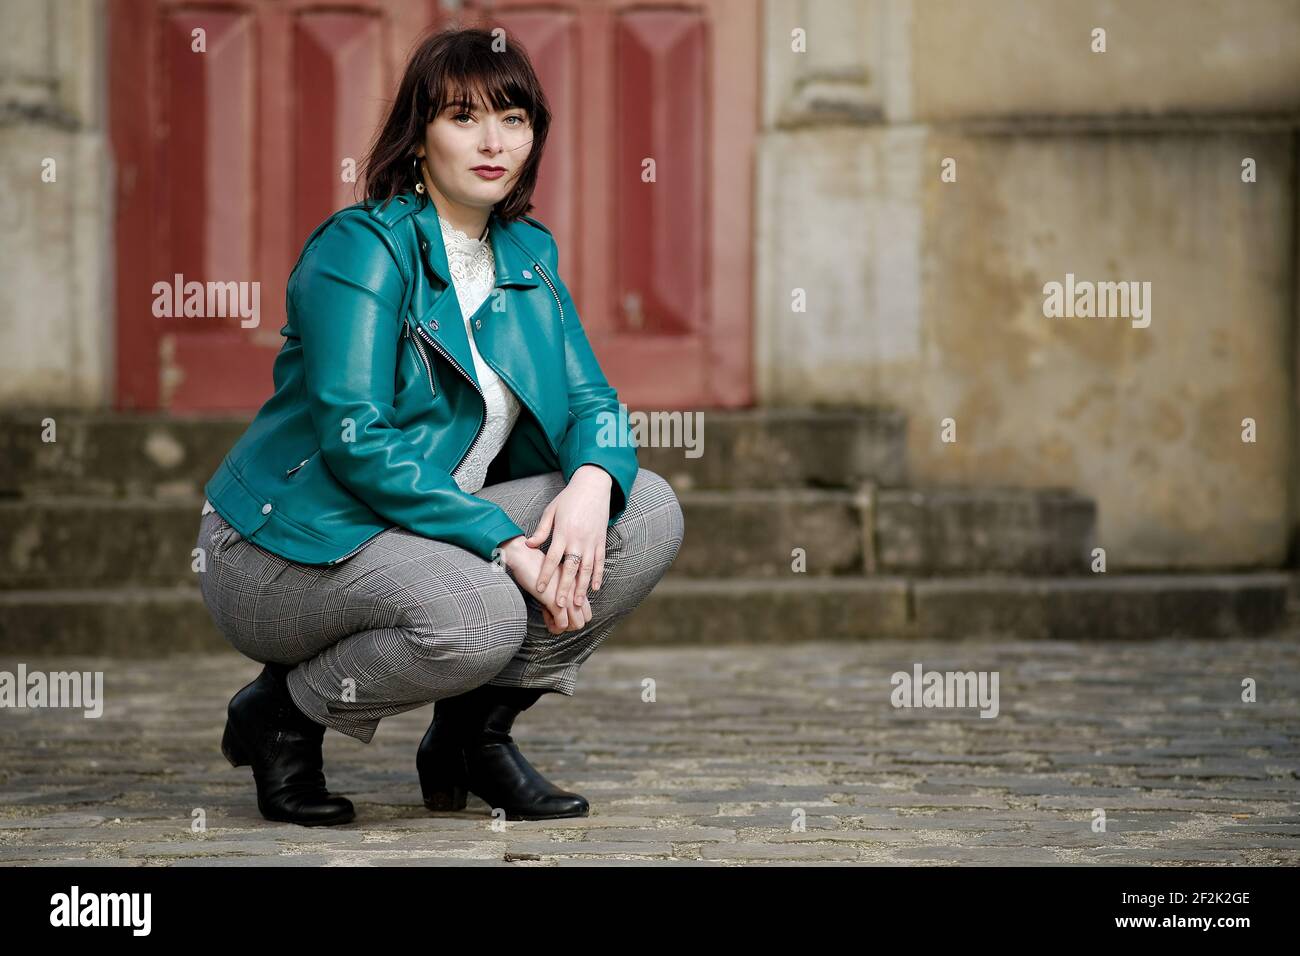 Schöne junge pariser Frau mit grünen Augen und einem grünen Jacke vor einer roten Tür in Paris Stockfoto